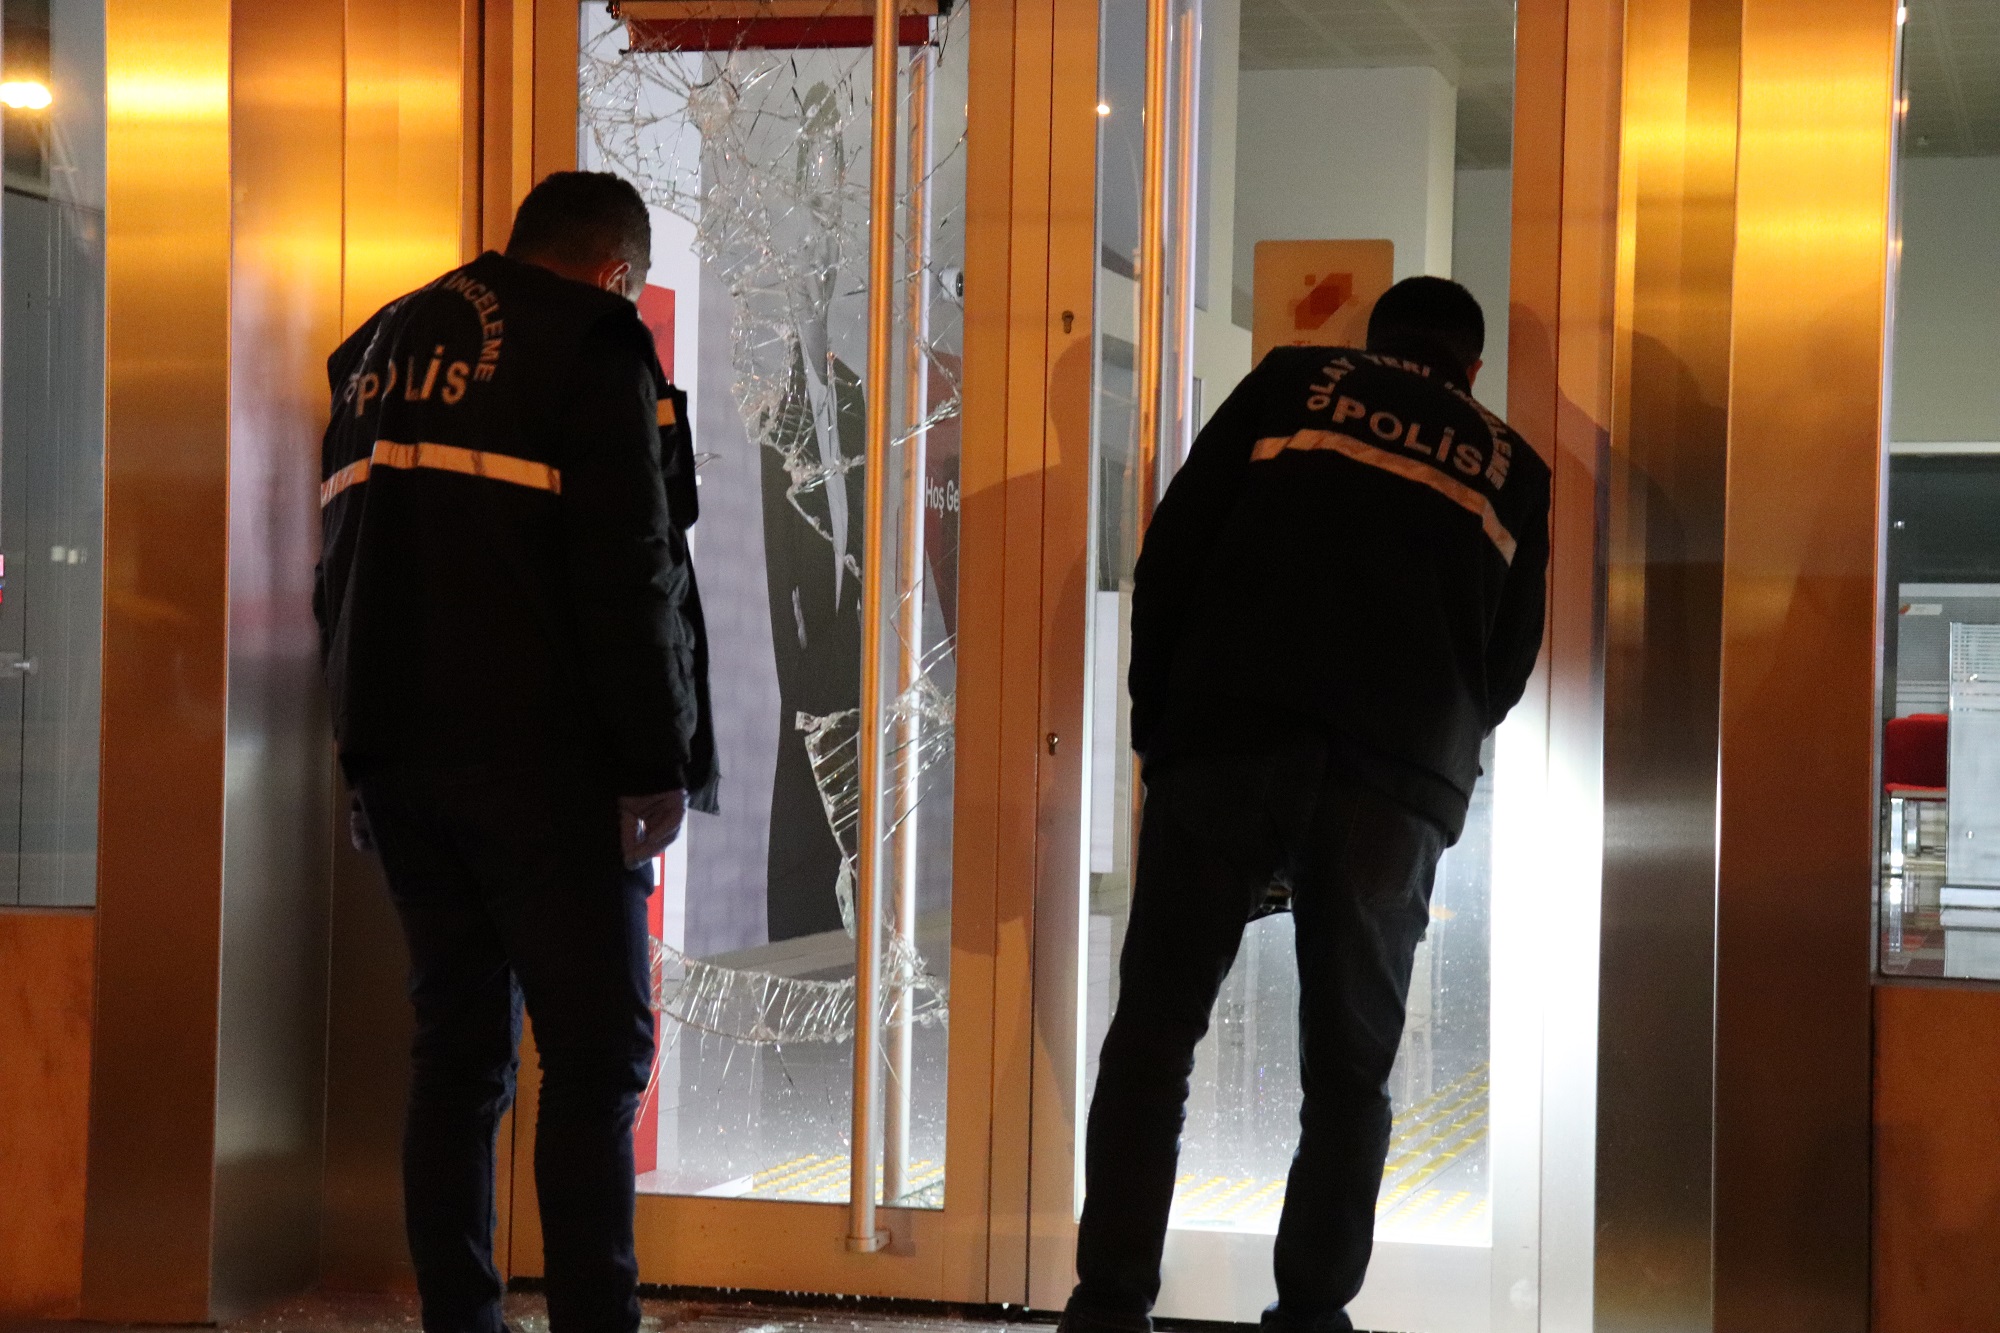 Malatya’da bir kişi, kaldırım taşı ile bir bankanın şubesinin giriş kapısının camlarını kırarak içeri girmek istedi, ancak çalan alarm üzerine bölgeye kısa sürede giren polis ekiplerince yakalanarak gözaltına alındı.